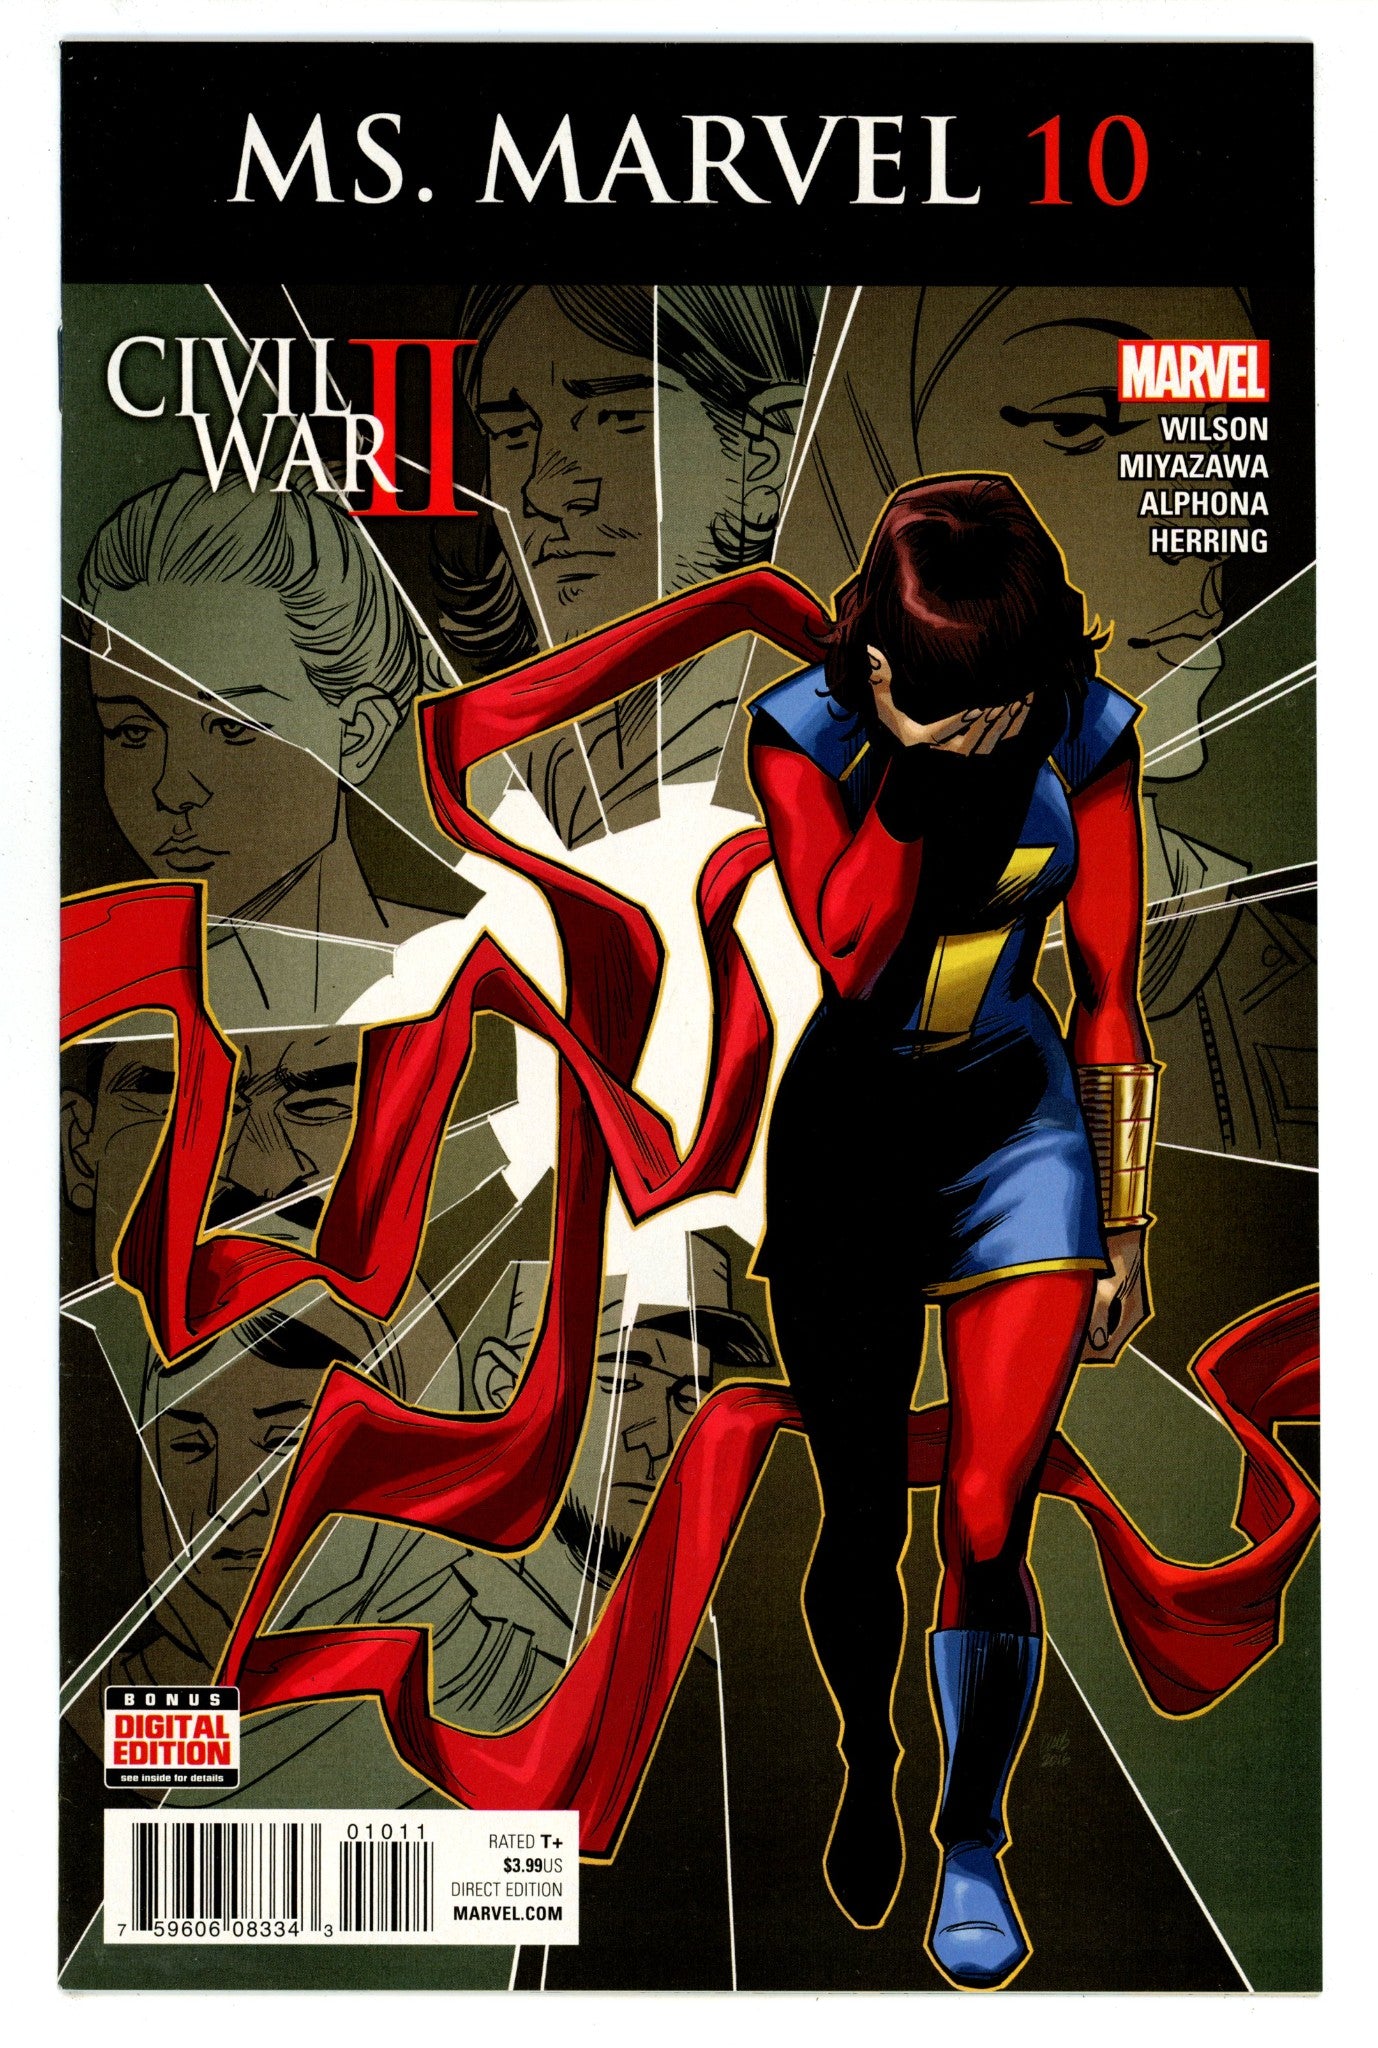 Ms. Marvel Vol 4 10 High Grade (2016) 